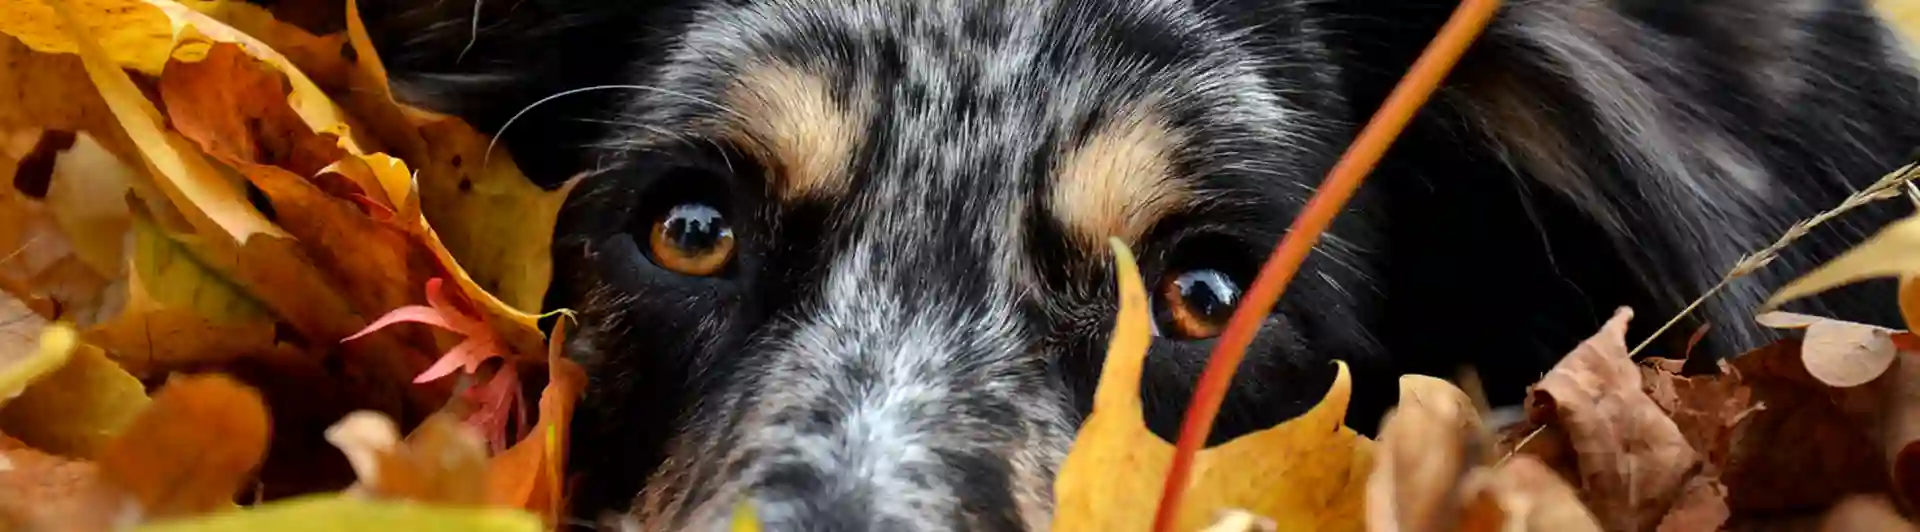 Australian Sheperd hund som ligger bland höstlöv